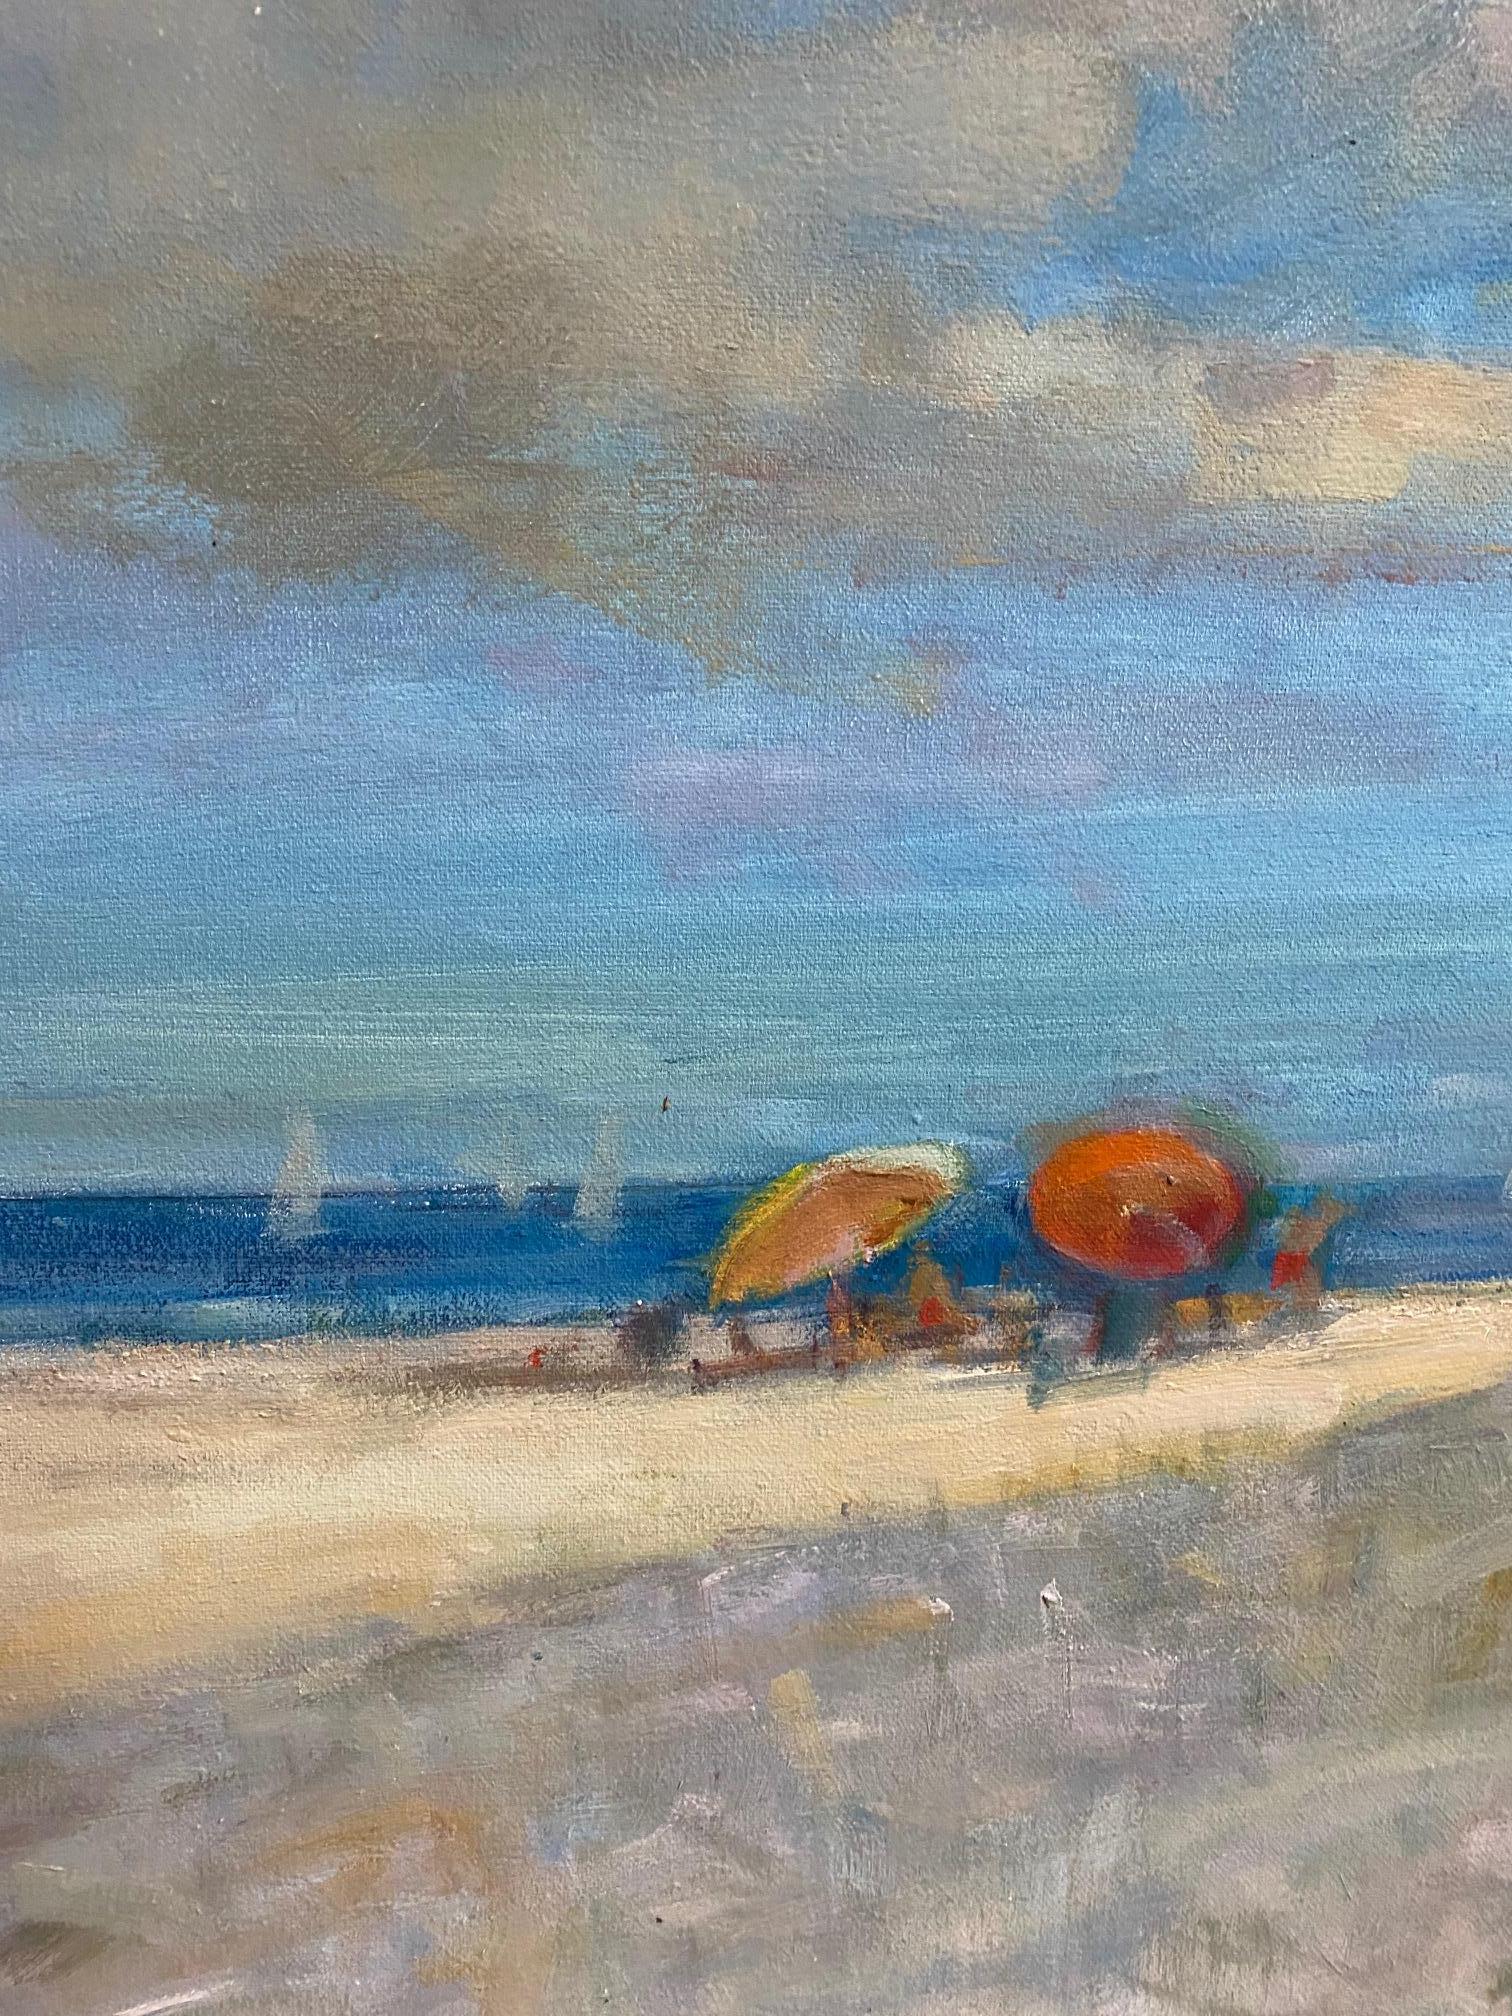 Beach in Midsummer, original 36x48iimpressionist marine landscape - Painting by Bart DeCeglie